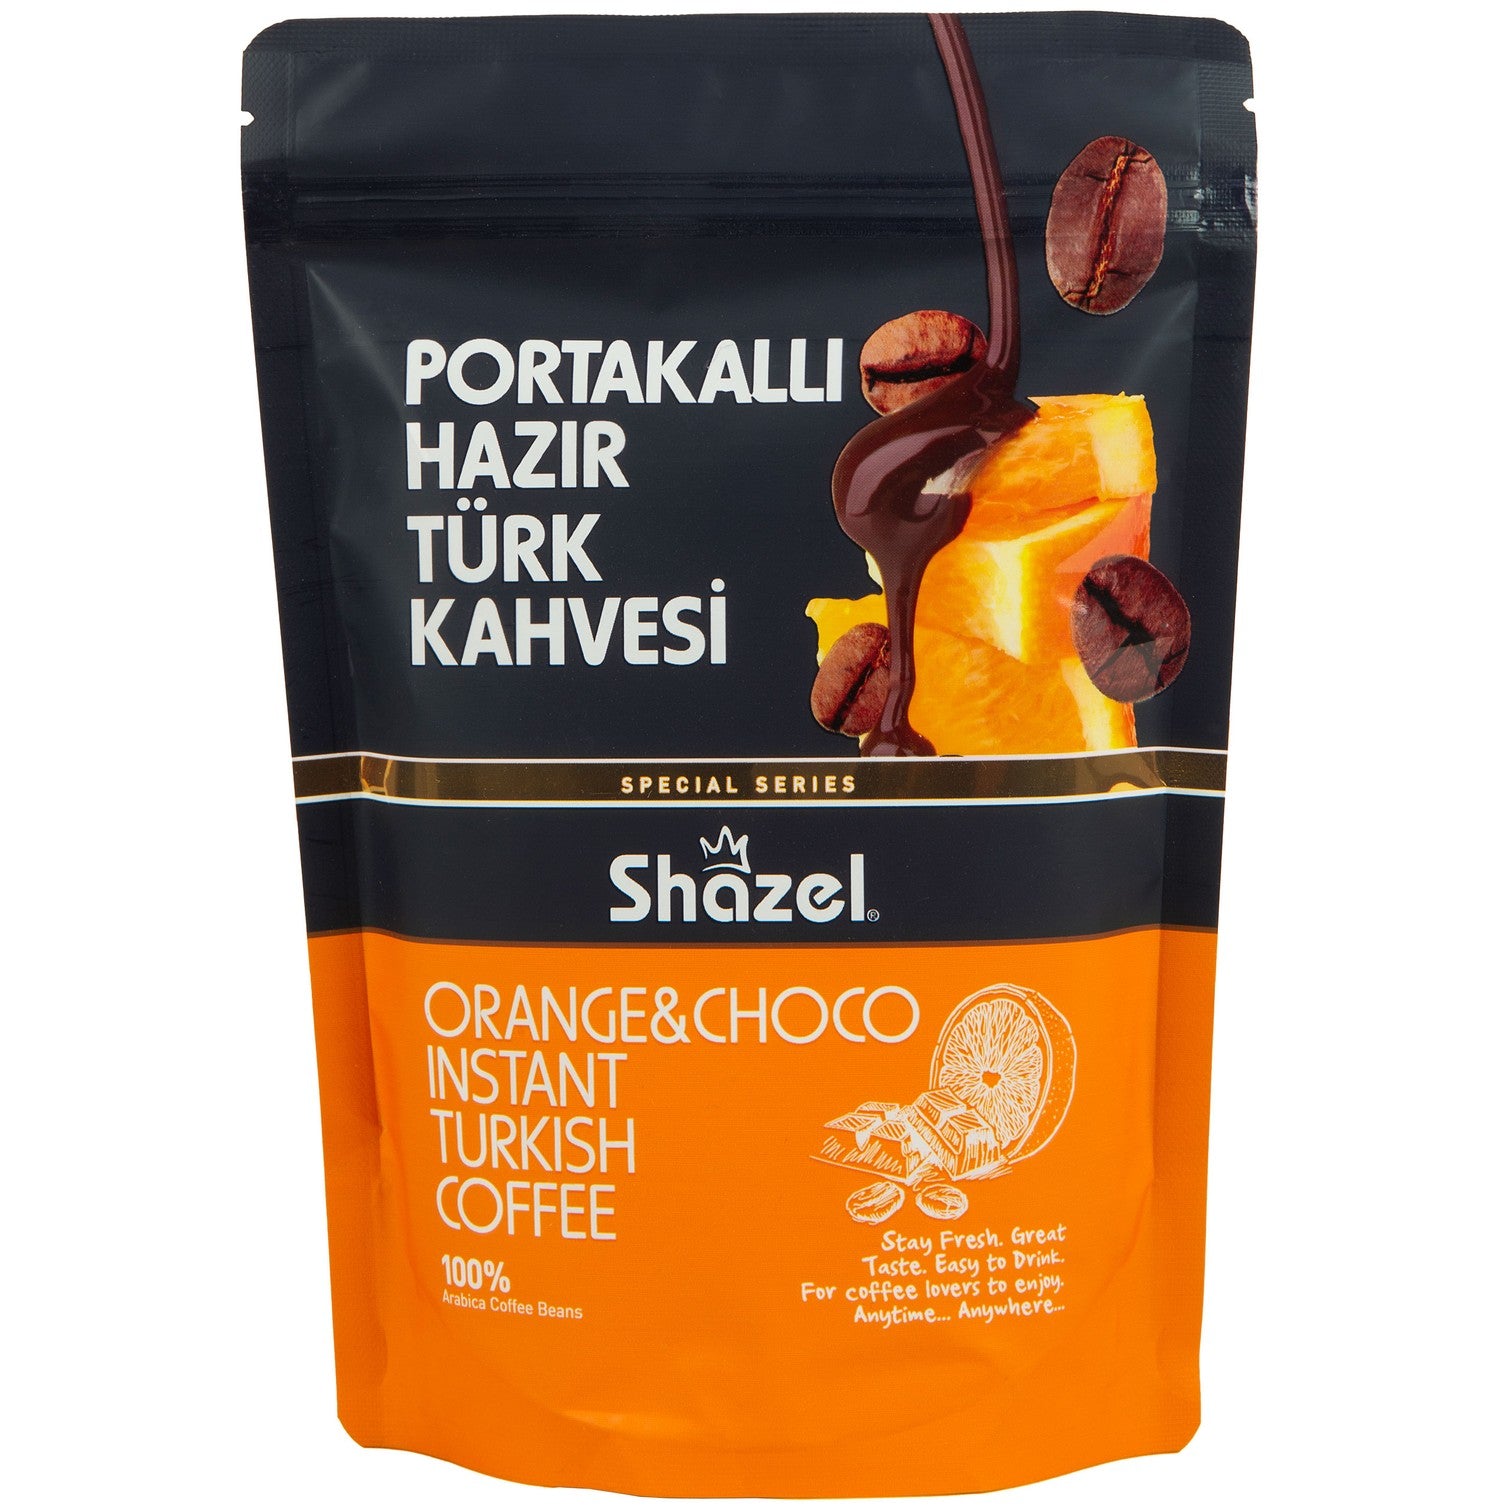 Shazel Portakallı Hazır Türk Kahvesi 200 Gr (Aromalı)